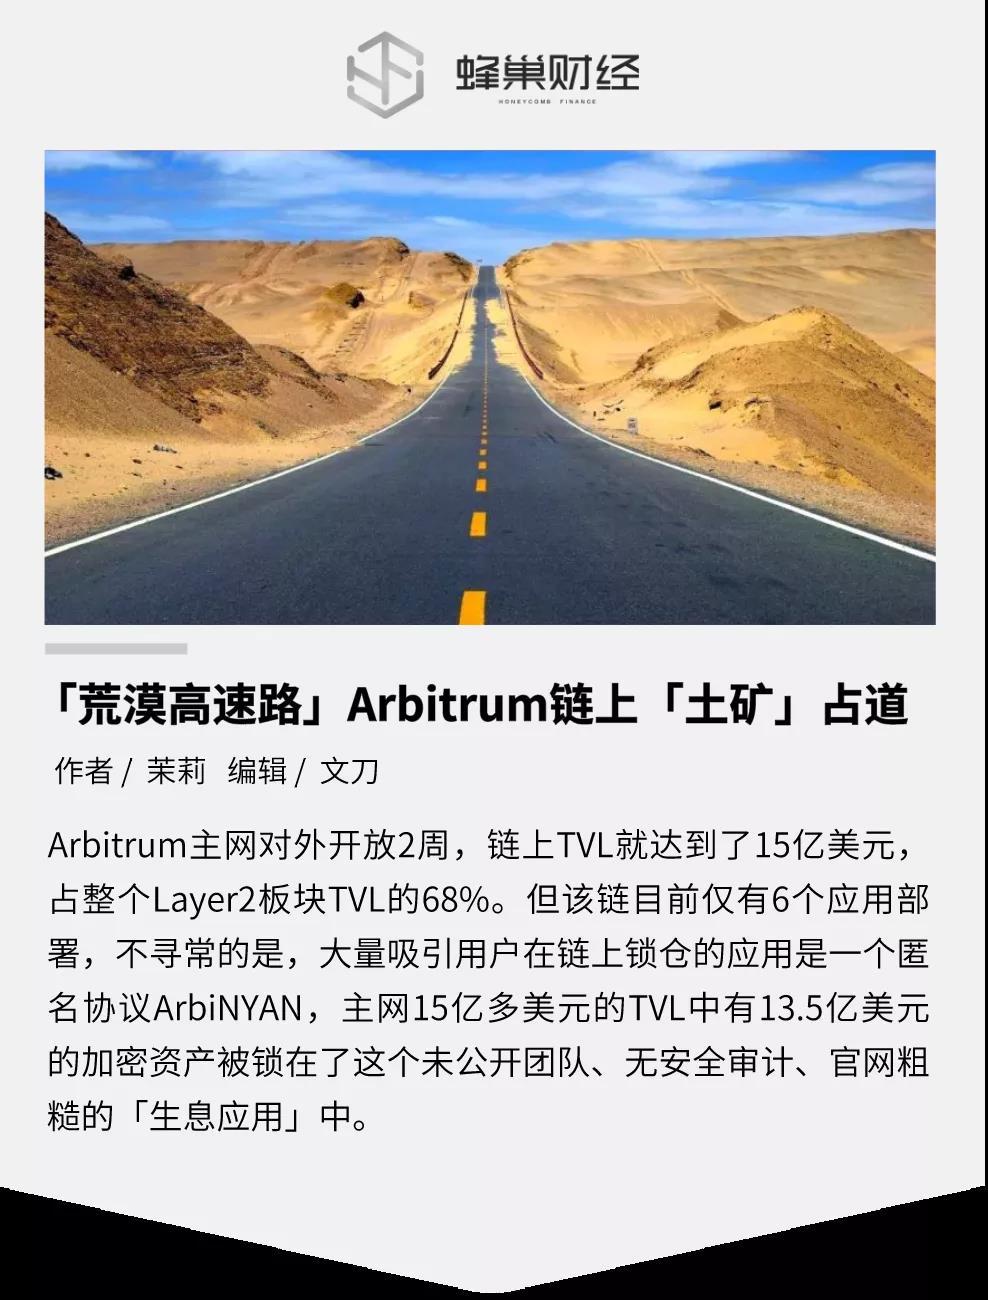 「荒漠高速路」Arbitrum链上「土矿」占道_aicoin_图1